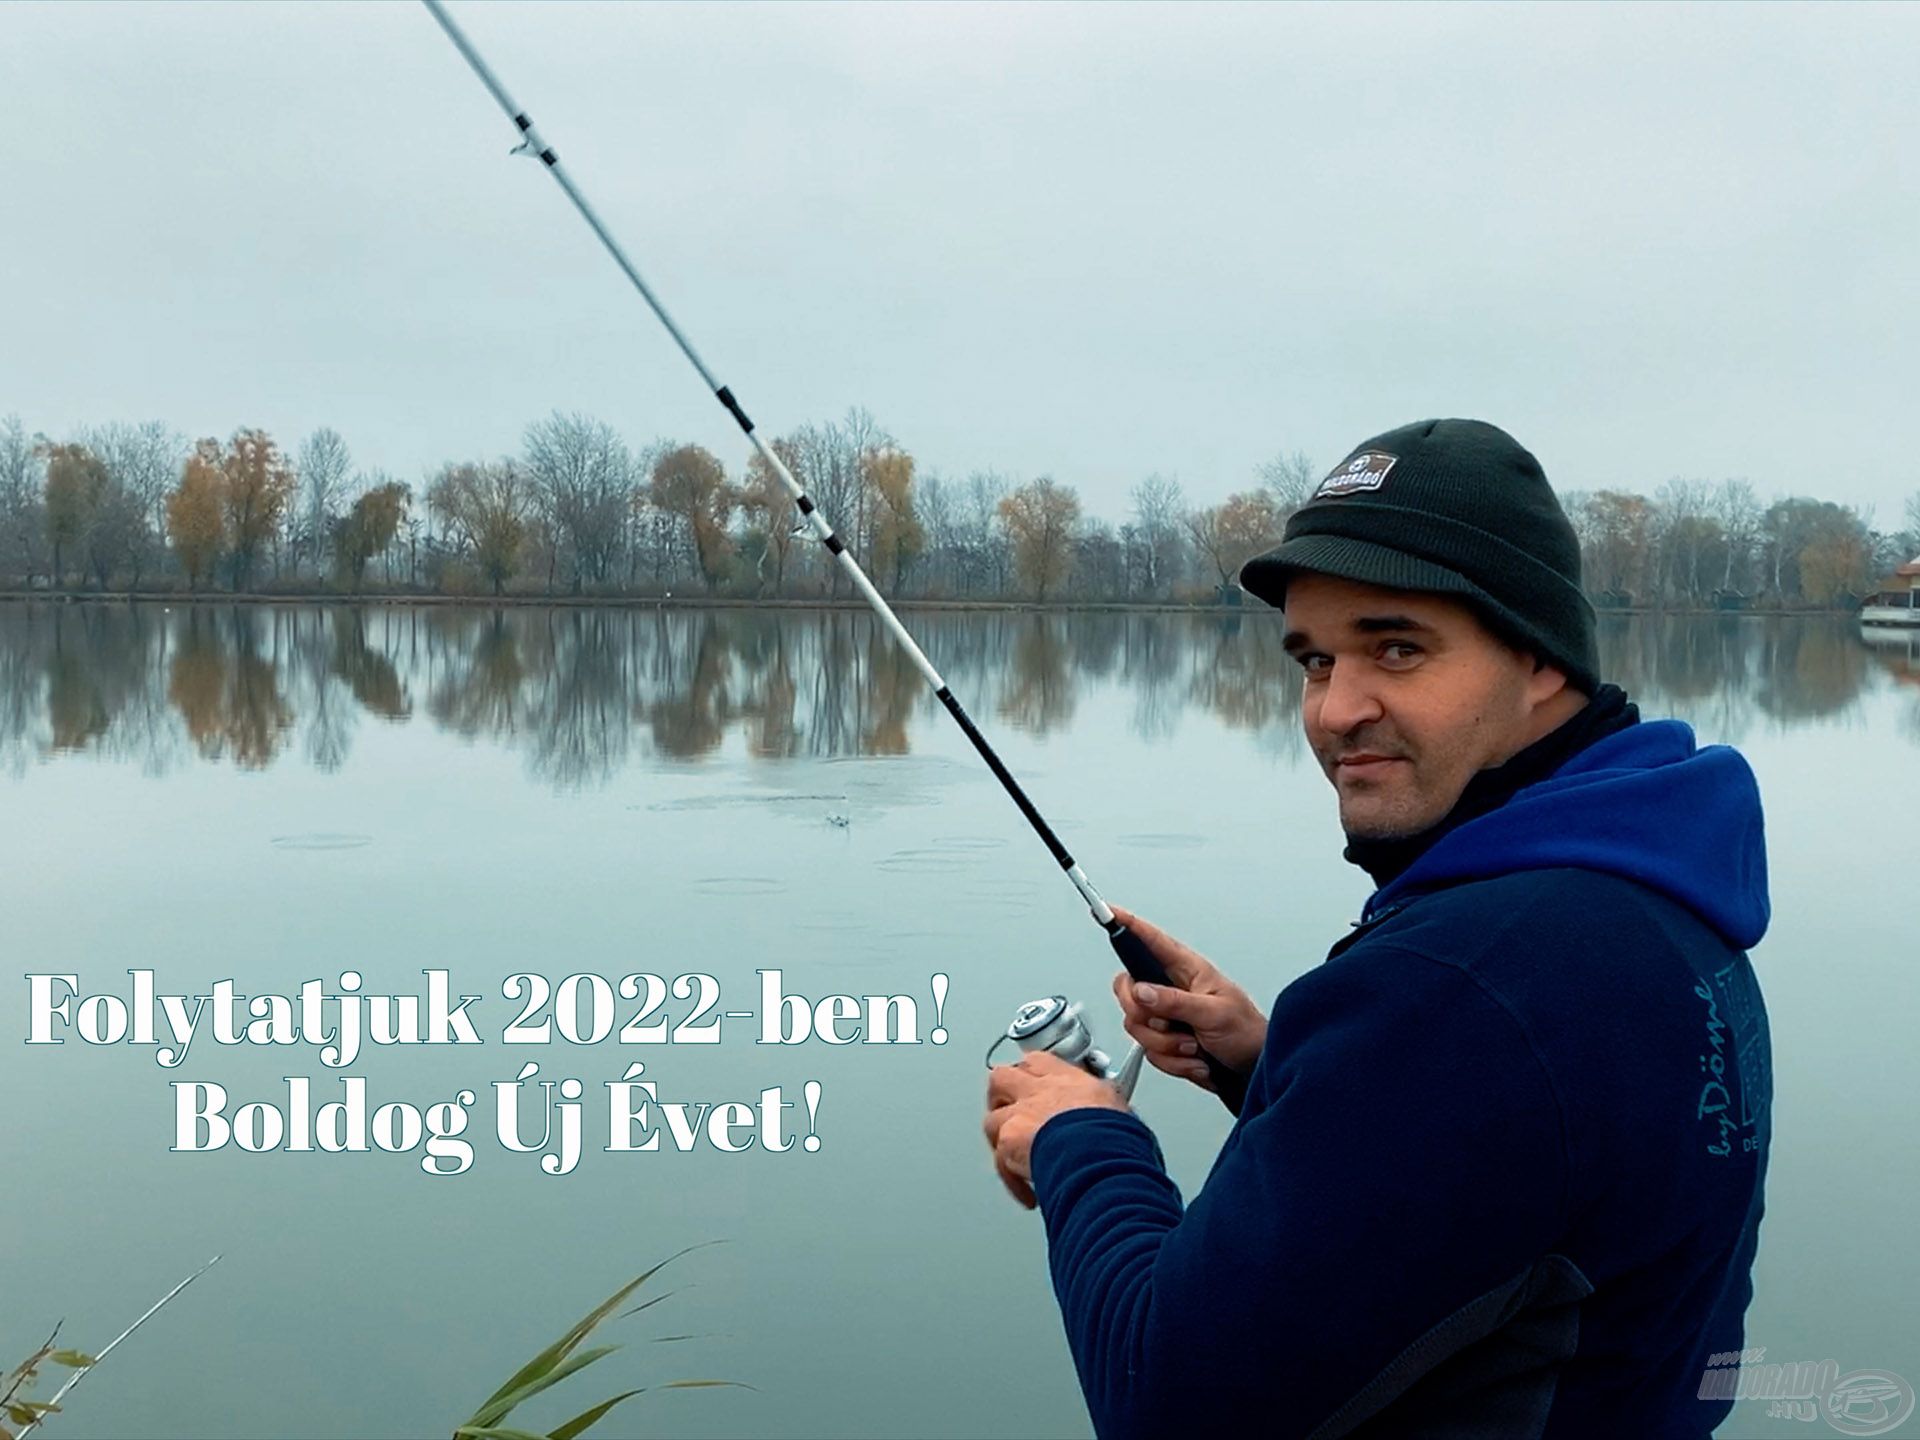 Horgászsikerekben gazdag boldog új évet kívánunk valamennyi látogatónknak, vásárlónknak!